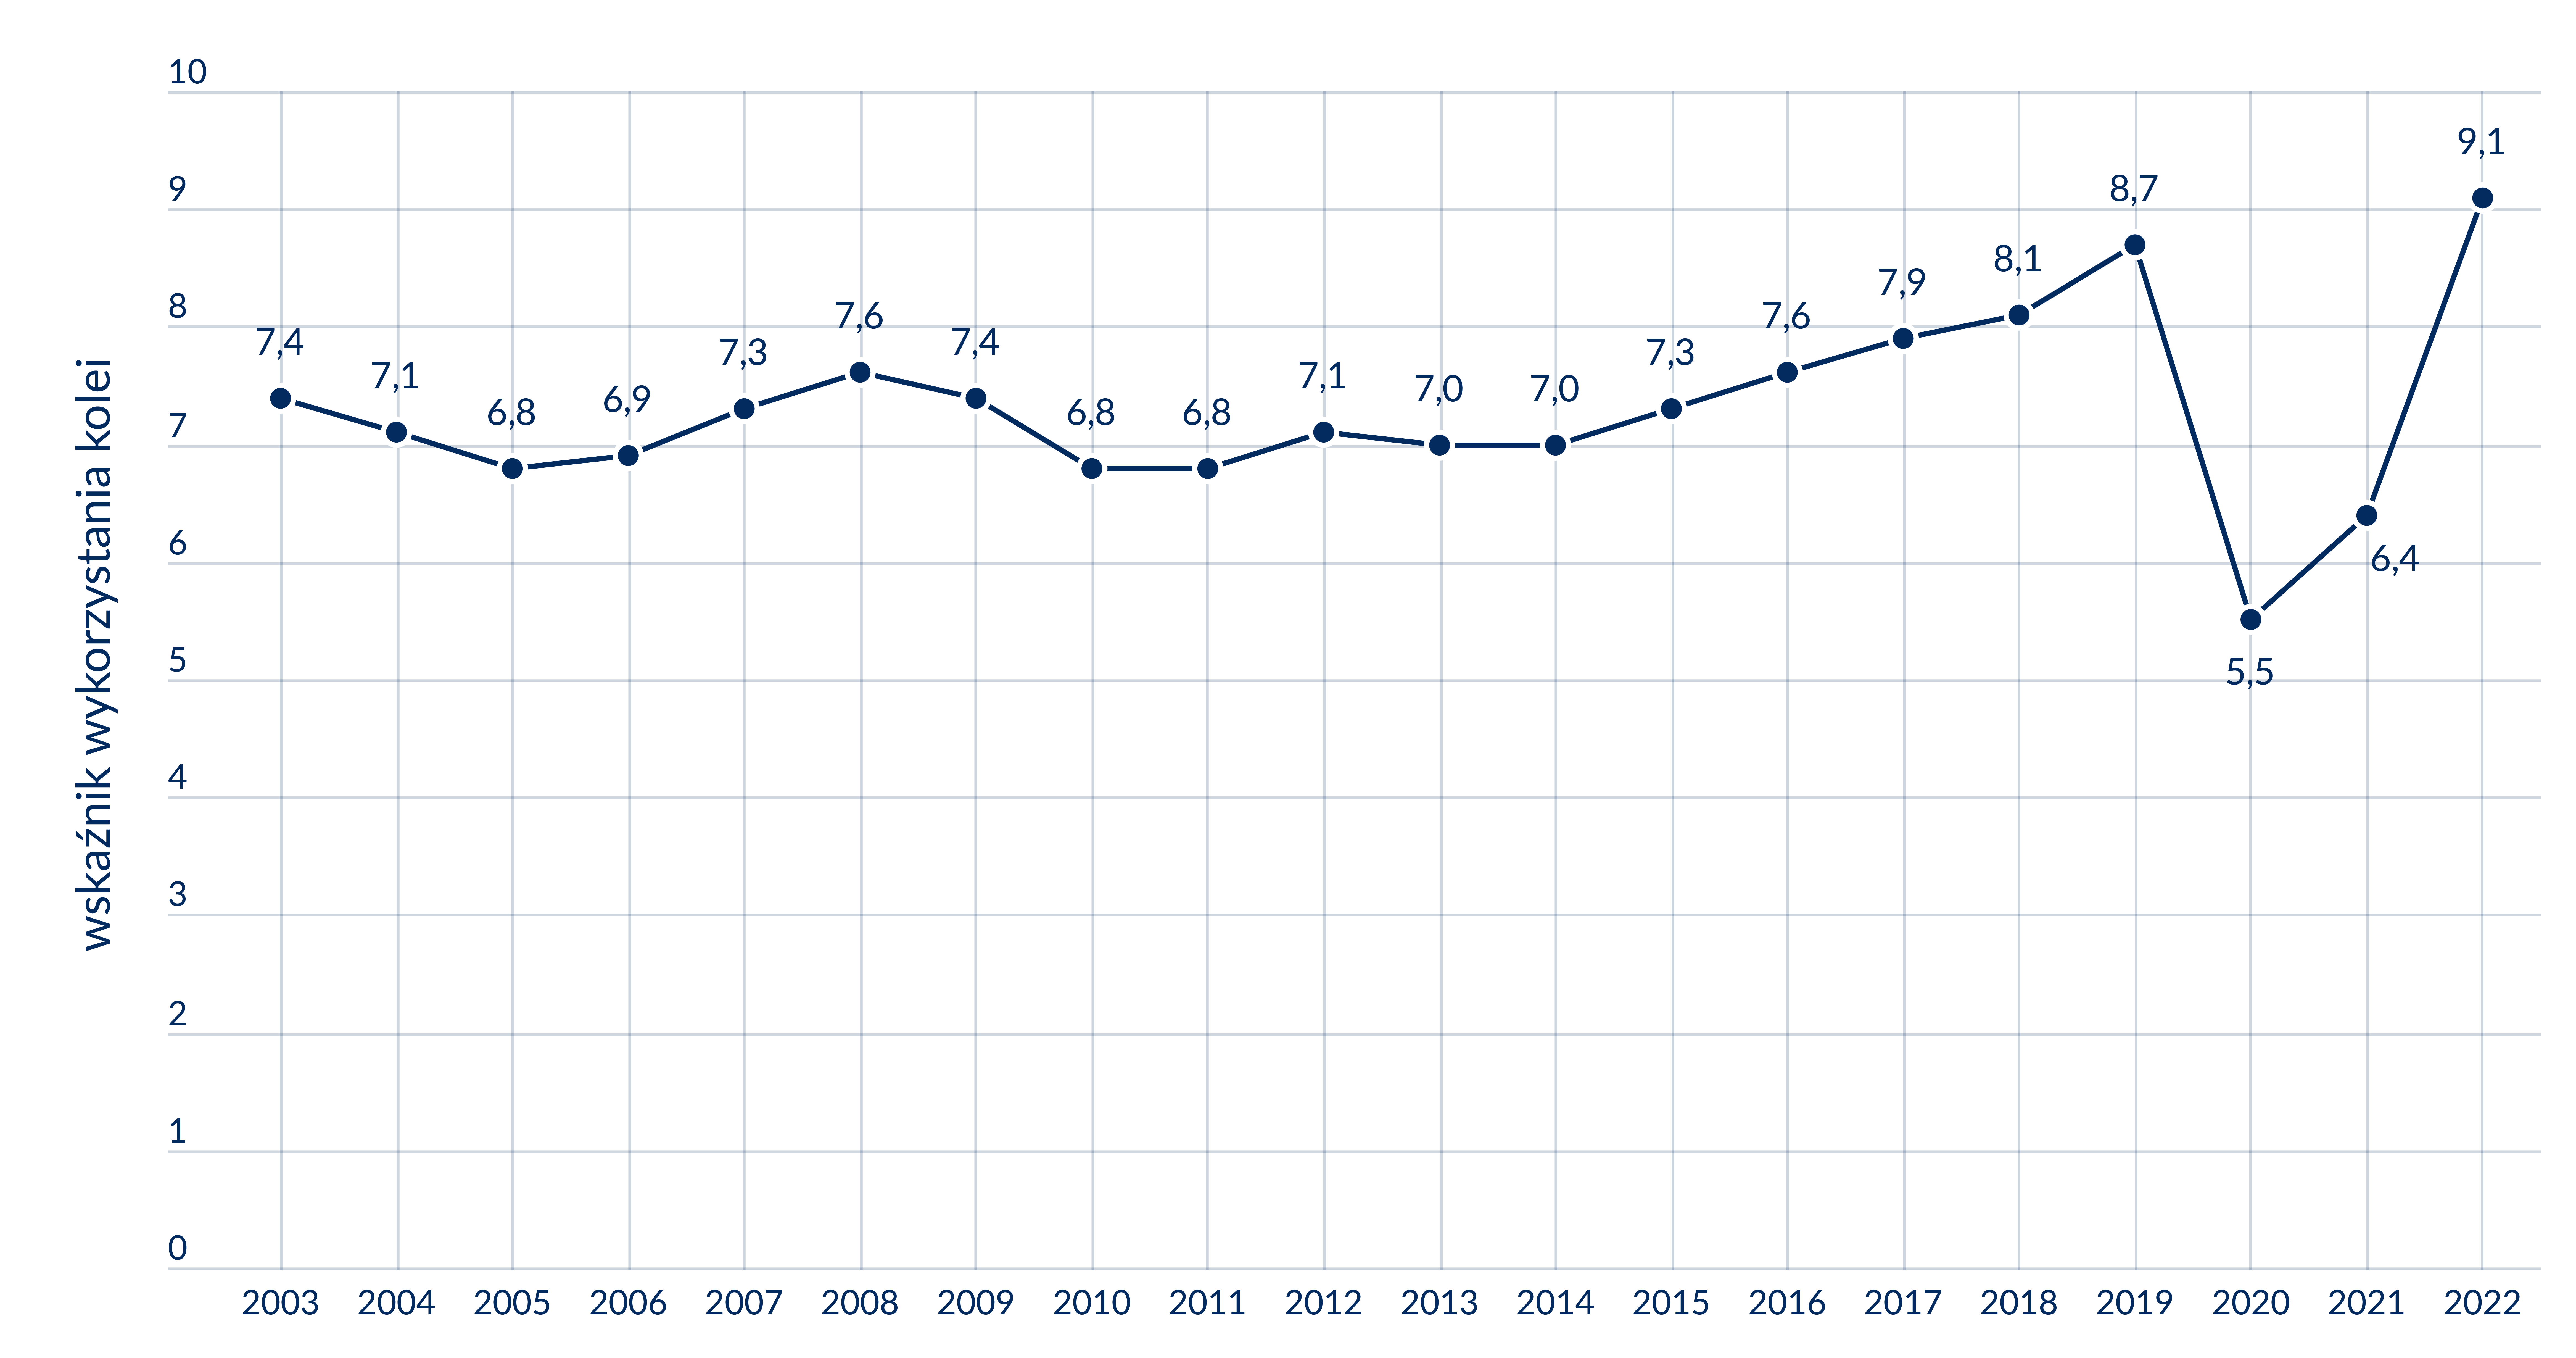 Na wykresie liniowym przedstawiono wskaźnik wykorzystania kolei pasażerskich w latach 2003-2022 (liczba podróży na 1 mieszkańca Polski) wraz z zaznaczona linia trendu (wznosząca). Wielkość wskaźnika oscyluje w latach 2003-2014 pomiędzy 6,8 a 7,6. Od 2015 . odnotowany został systematyczny wzrost do poziomu 8,7 w 2019 г. W 2020 . w związku z pandemia odnotowano spadek do poziomu 5,5, w 2021 r. wzrost do poziomu 6,4, a w 2022 г. odnotowano najwyższy wzrost do poziomu 9,1